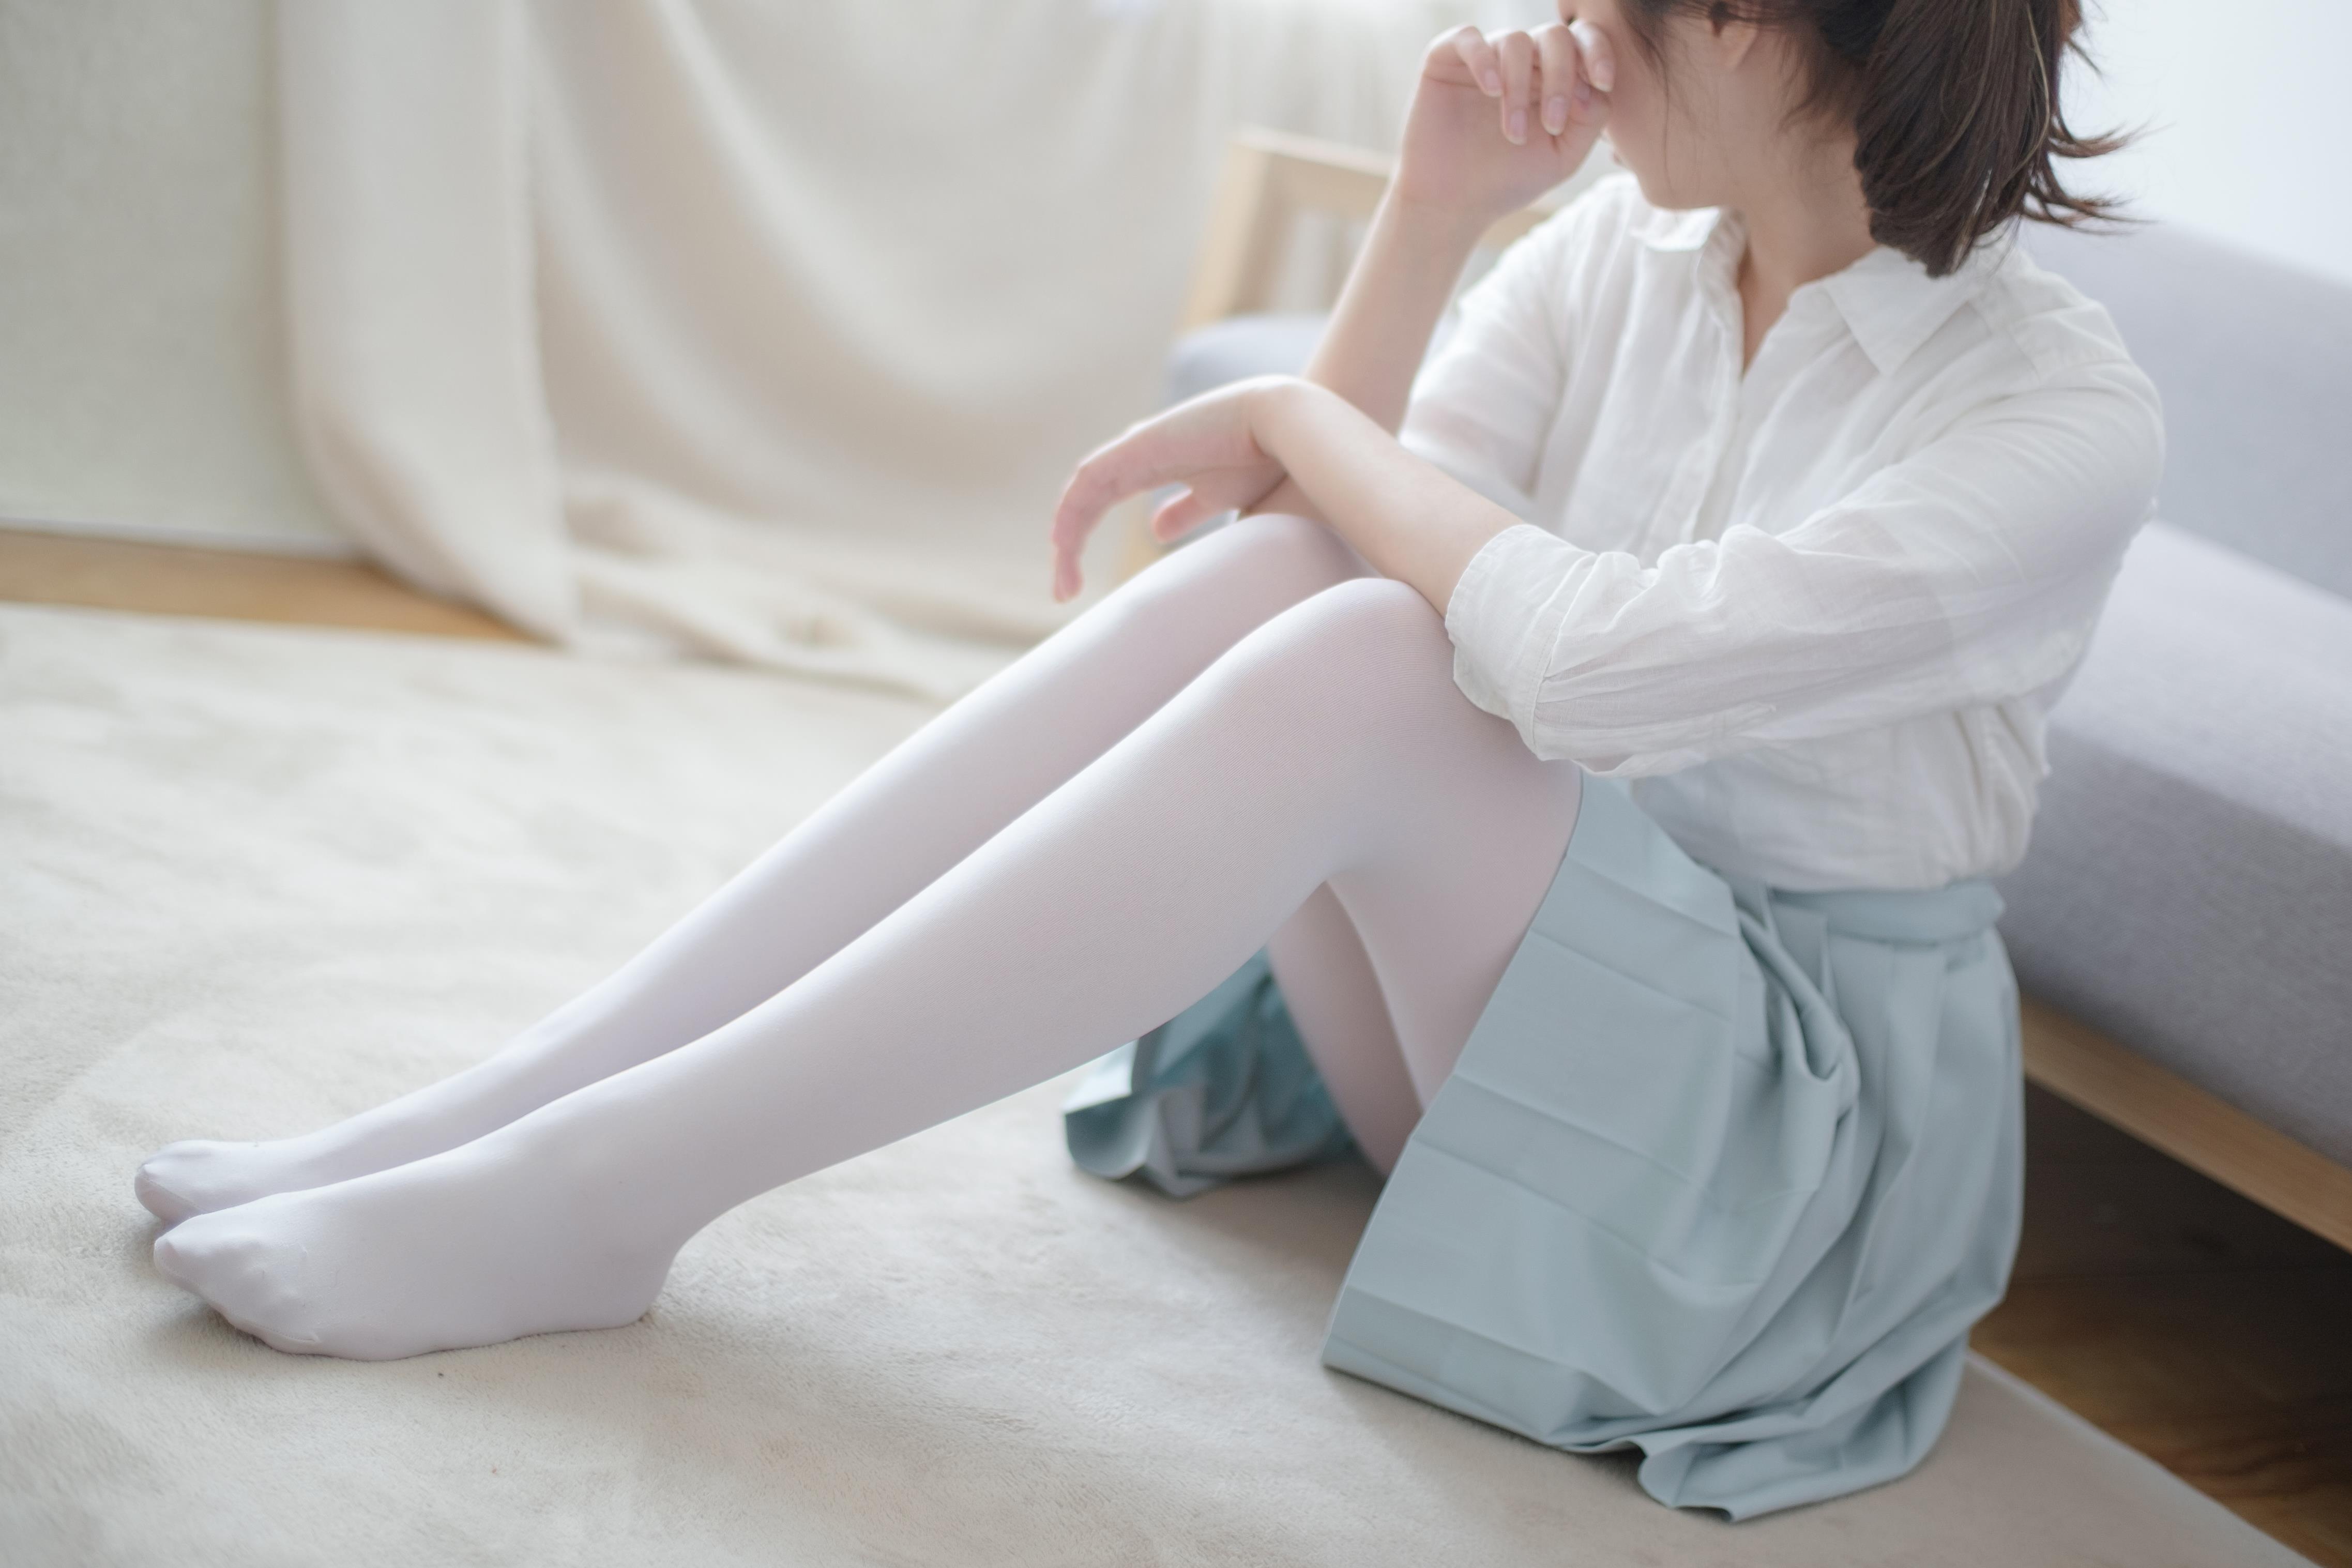 森 萝 财 团 萝 莉 R15-003 白 色 衬 衫 与 淡 蓝 色 短 裙 加 白 色 丝 袜 美 腿 性 感 私 房... 